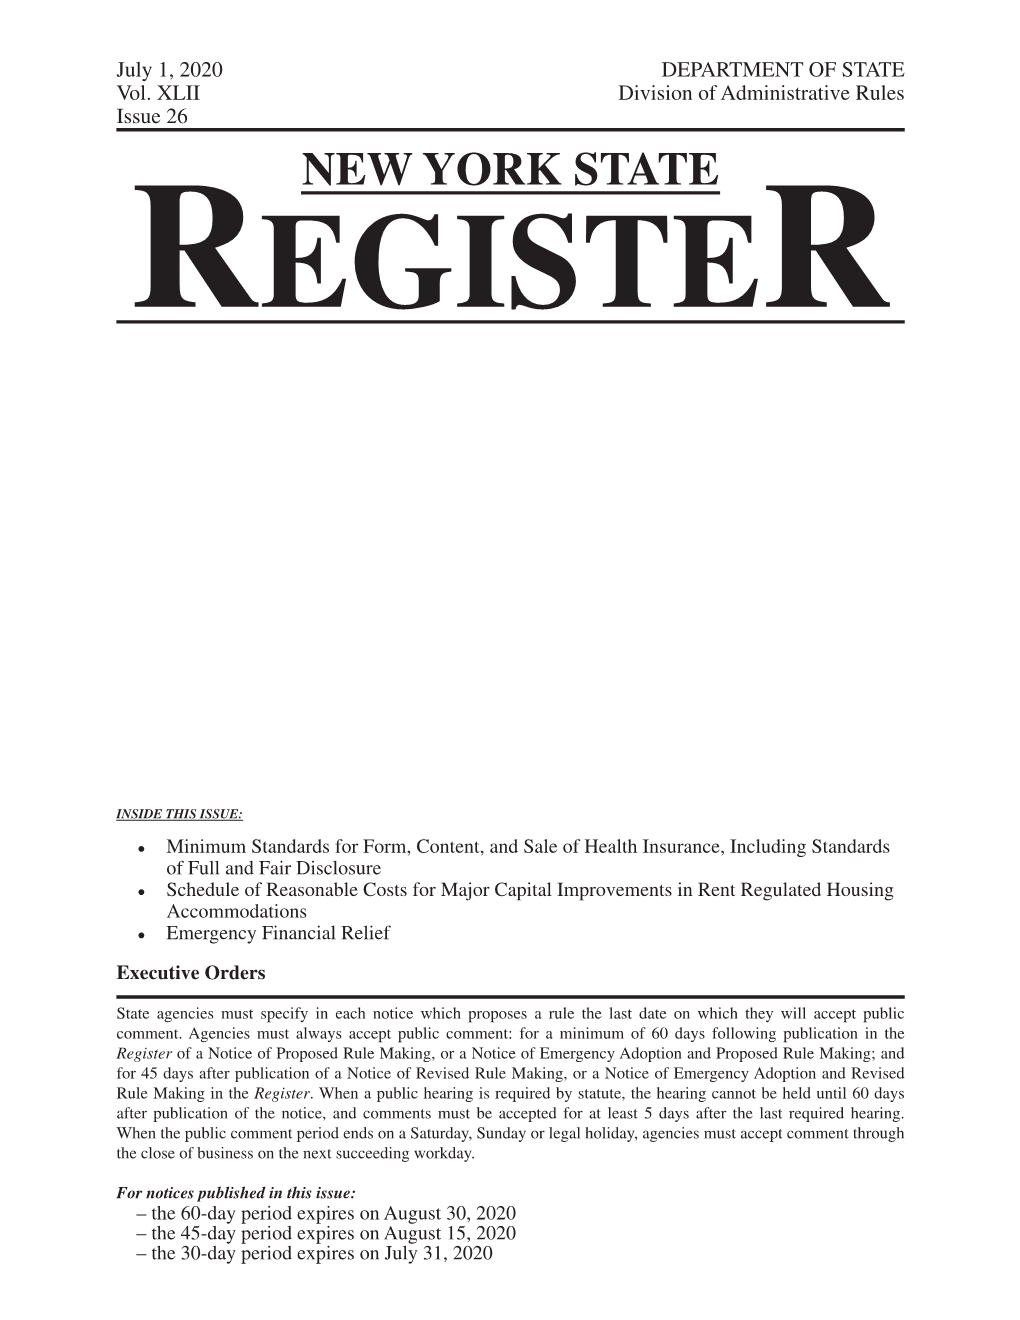 New York State Register